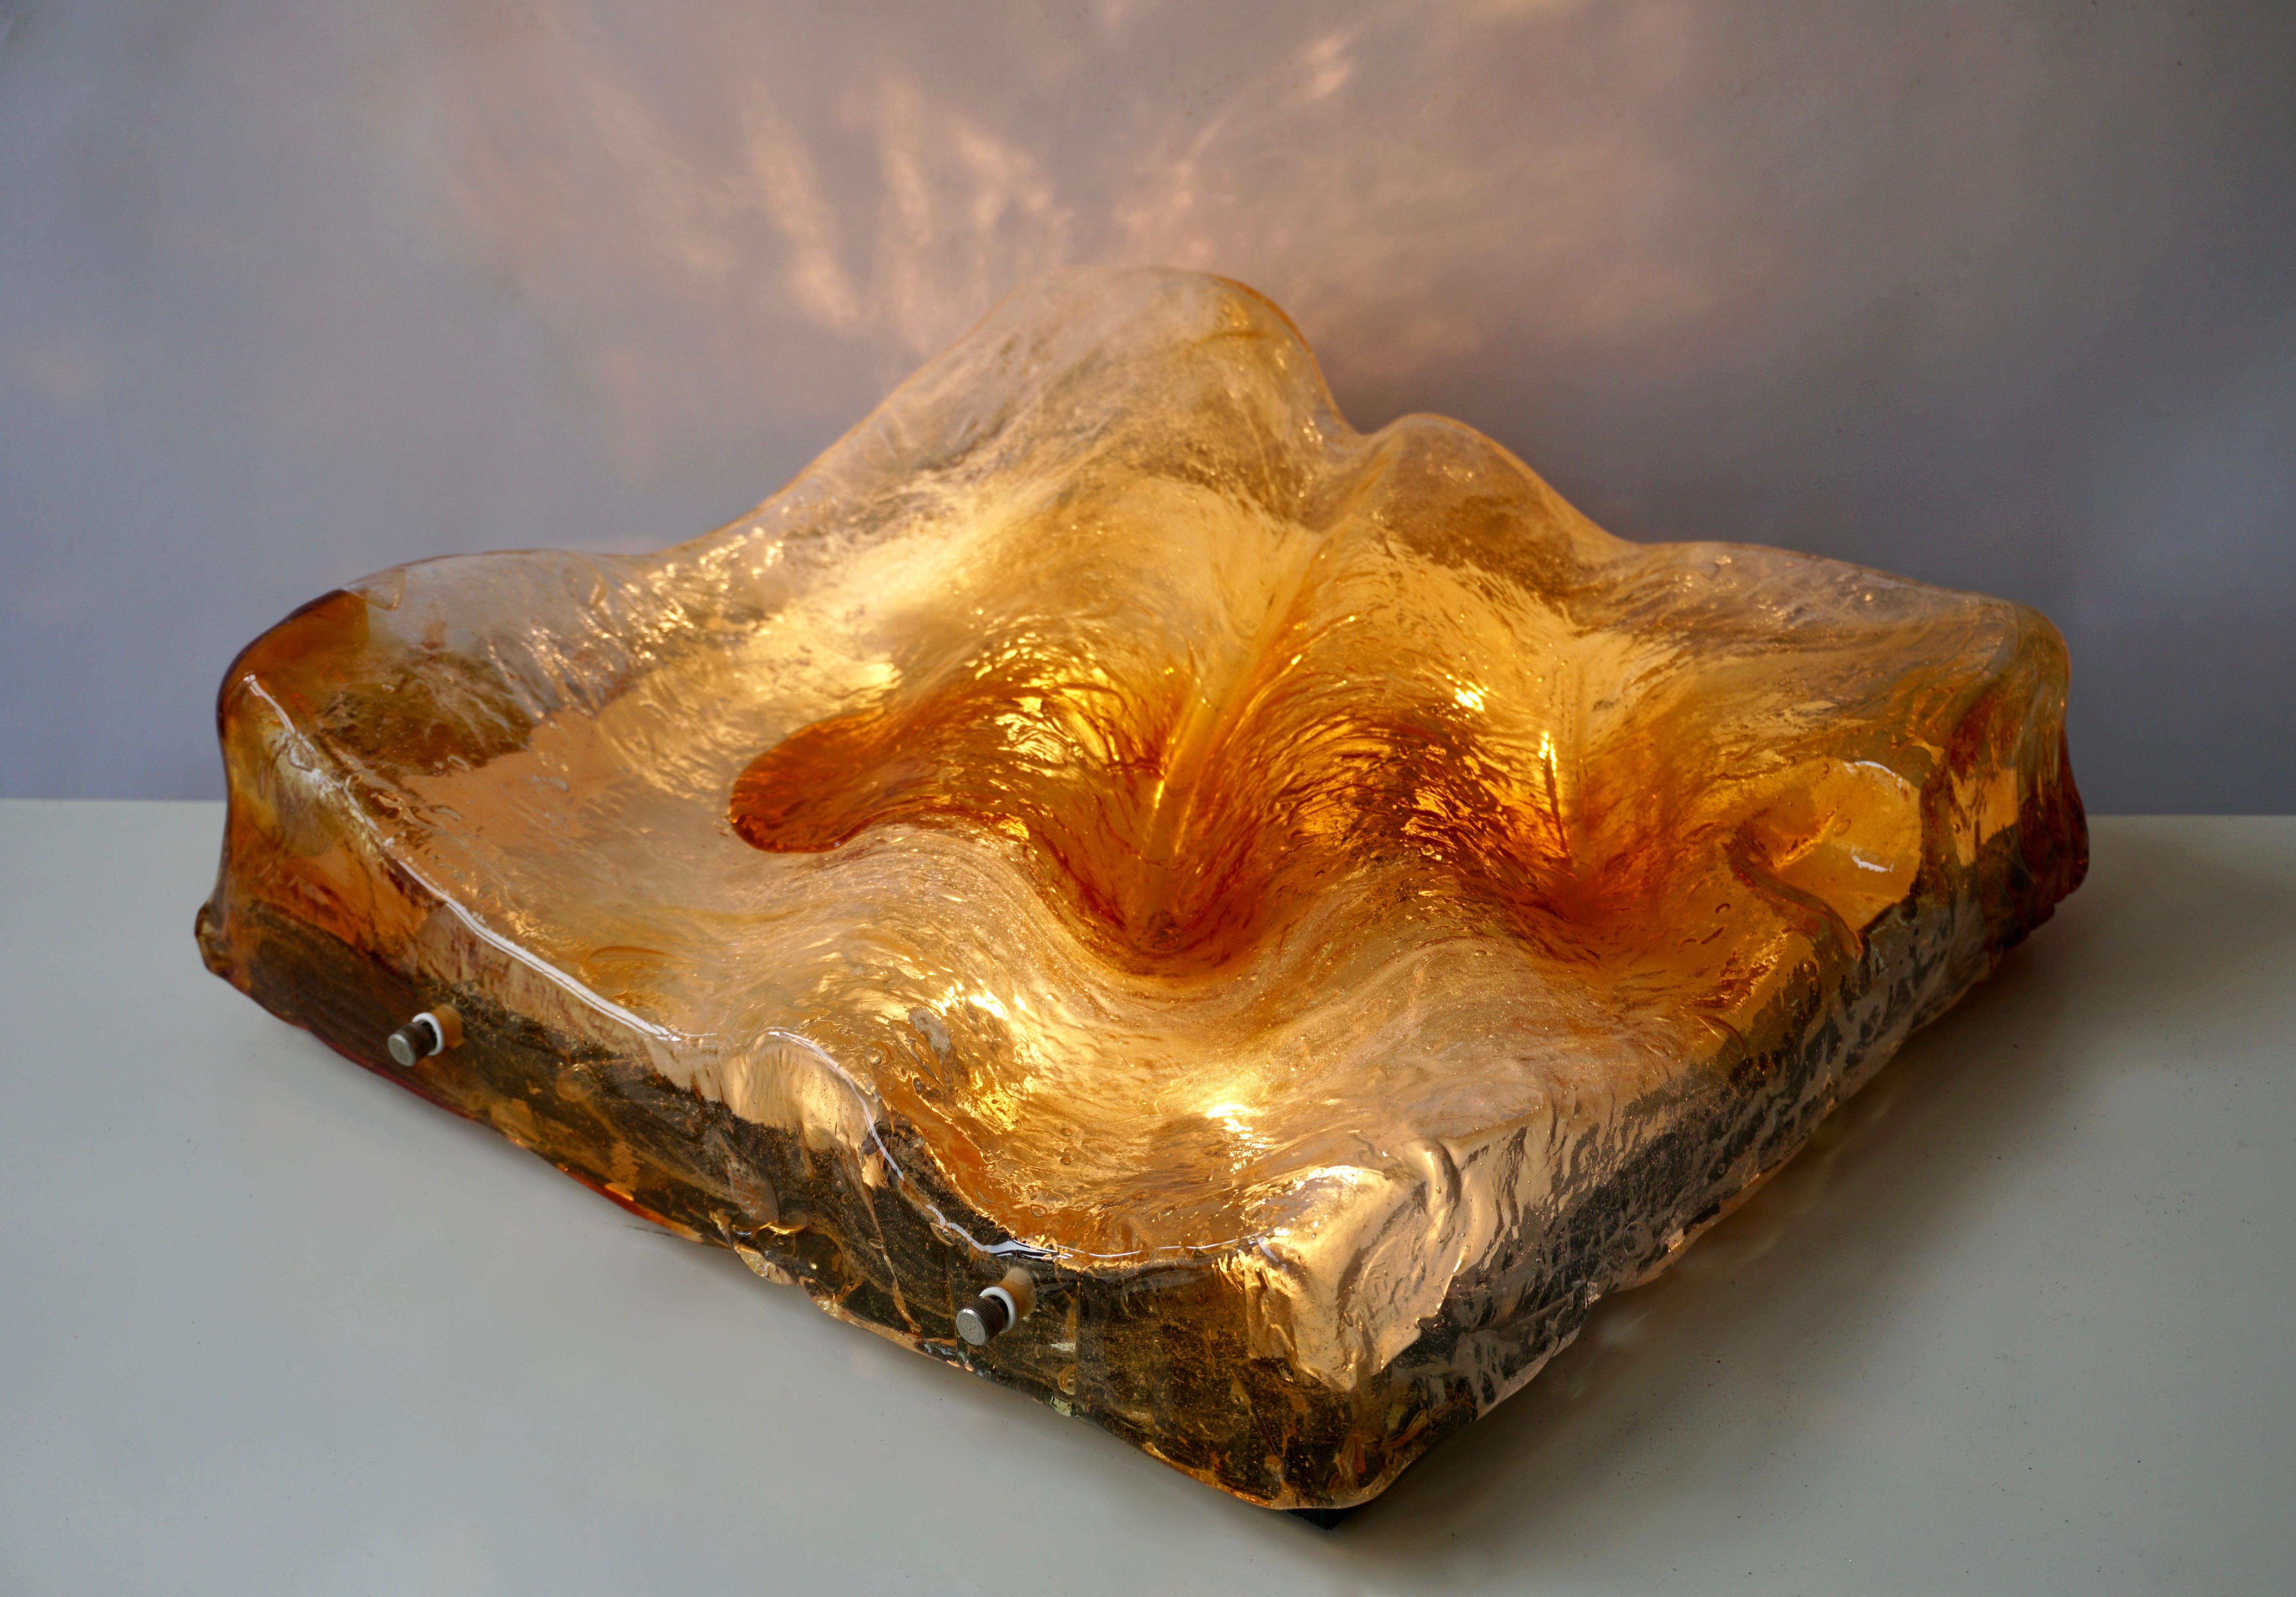 Grand plafonnier carré en verre de Murano de couleur ambre avec plaque arrière en métal par Mazzega. (Applique)

La lampe nécessite quatre ampoules à vis E14 (45 Watt max.).
Largeur 43 cm.
Hauteur 14 cm.
Poids 10 kg.